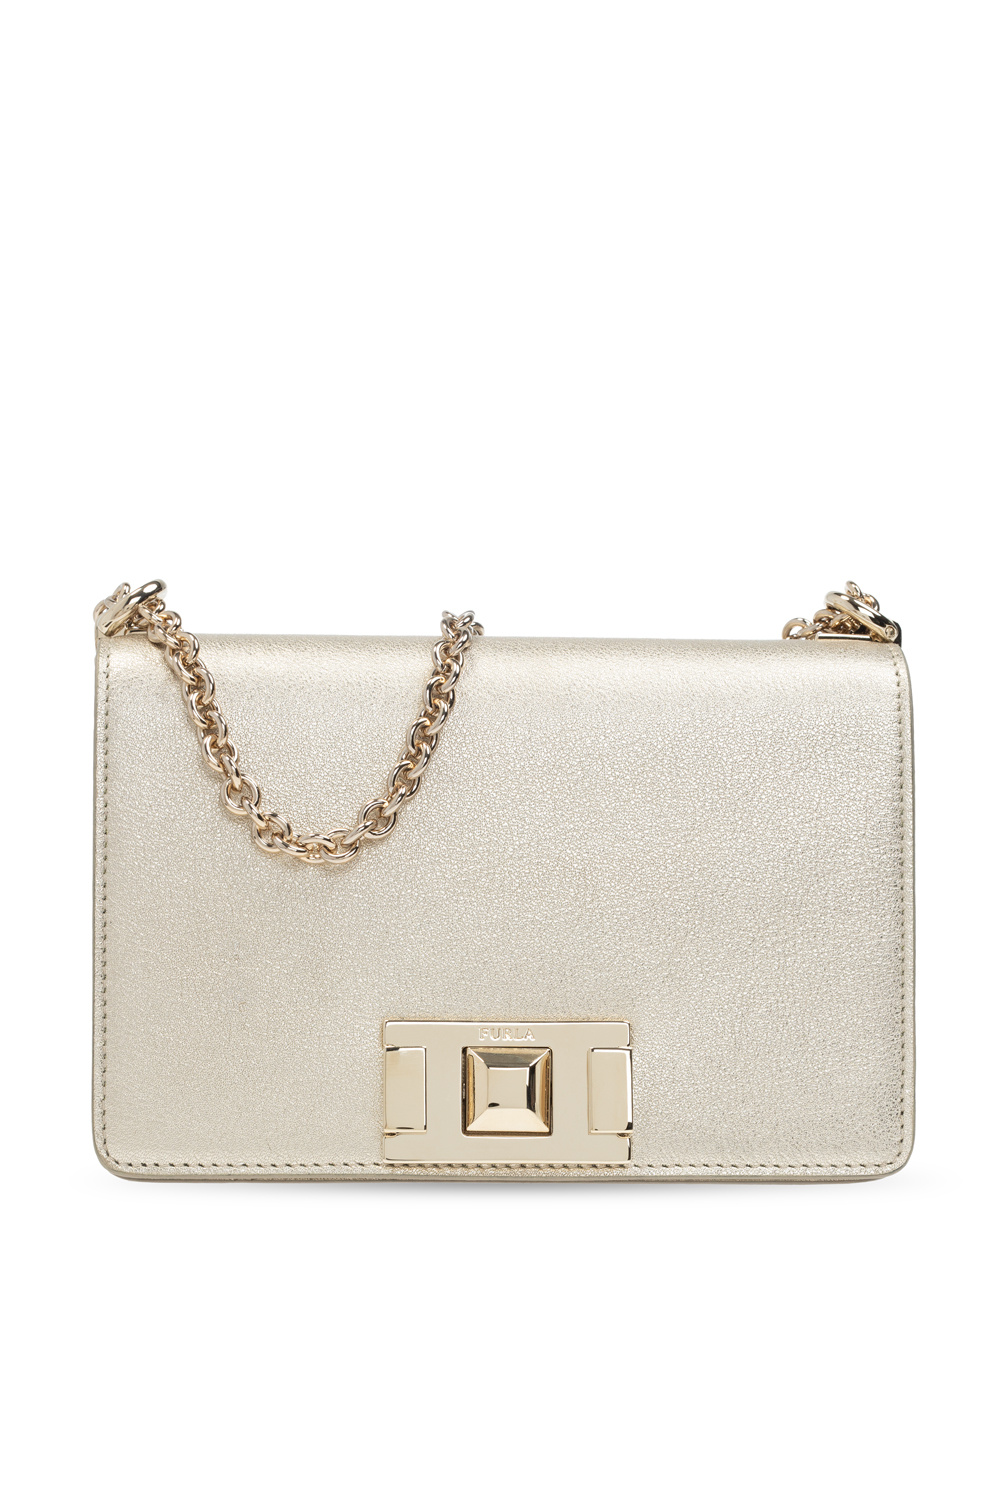 IetpShops | Women's Bags | Furla 'Mimi' shoulder bag | alberta